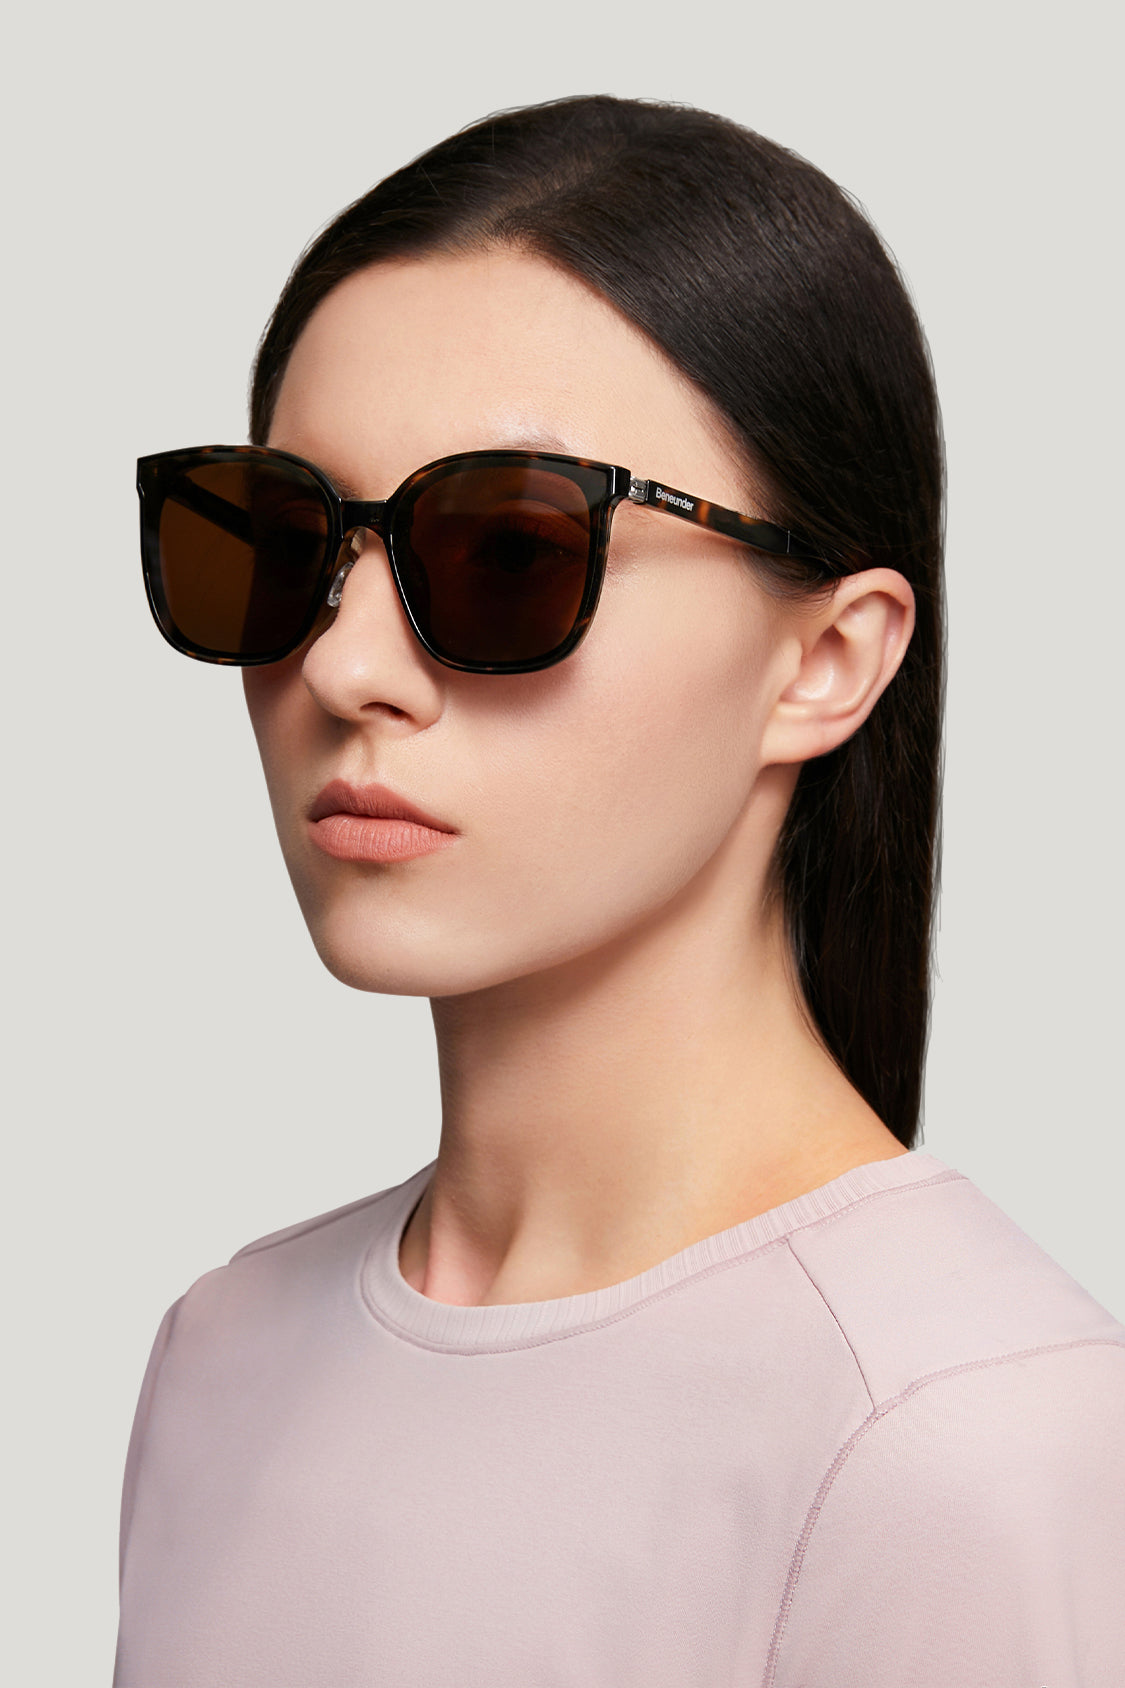 beneunder men's neonspace polarized folding sunglasses shades for women men #color_tortoiseshell tea